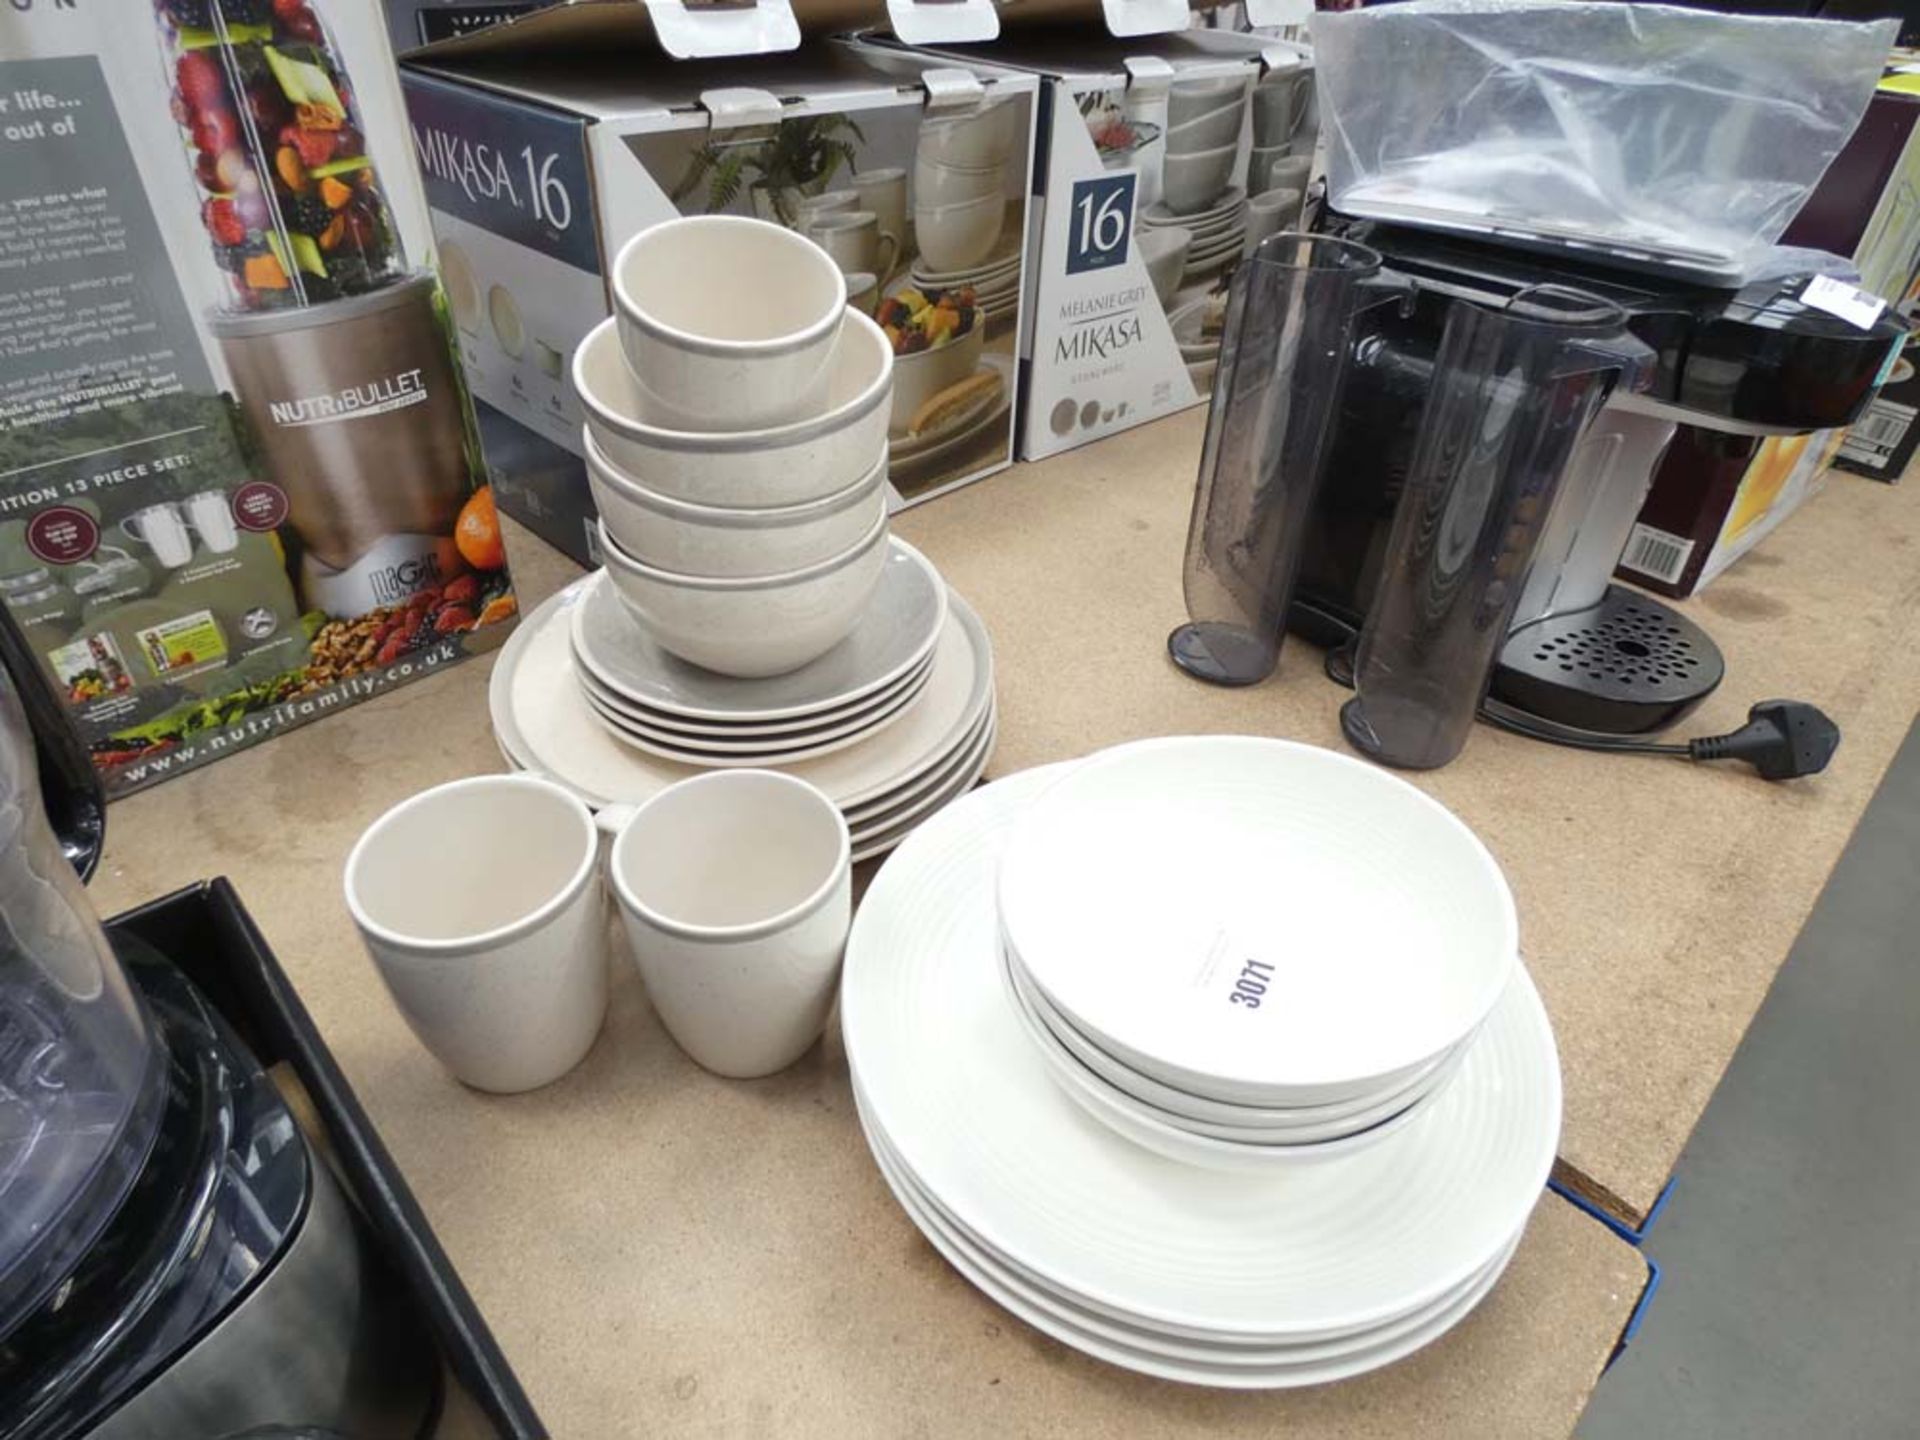 Royal Doulton and Mikasa table ware sets